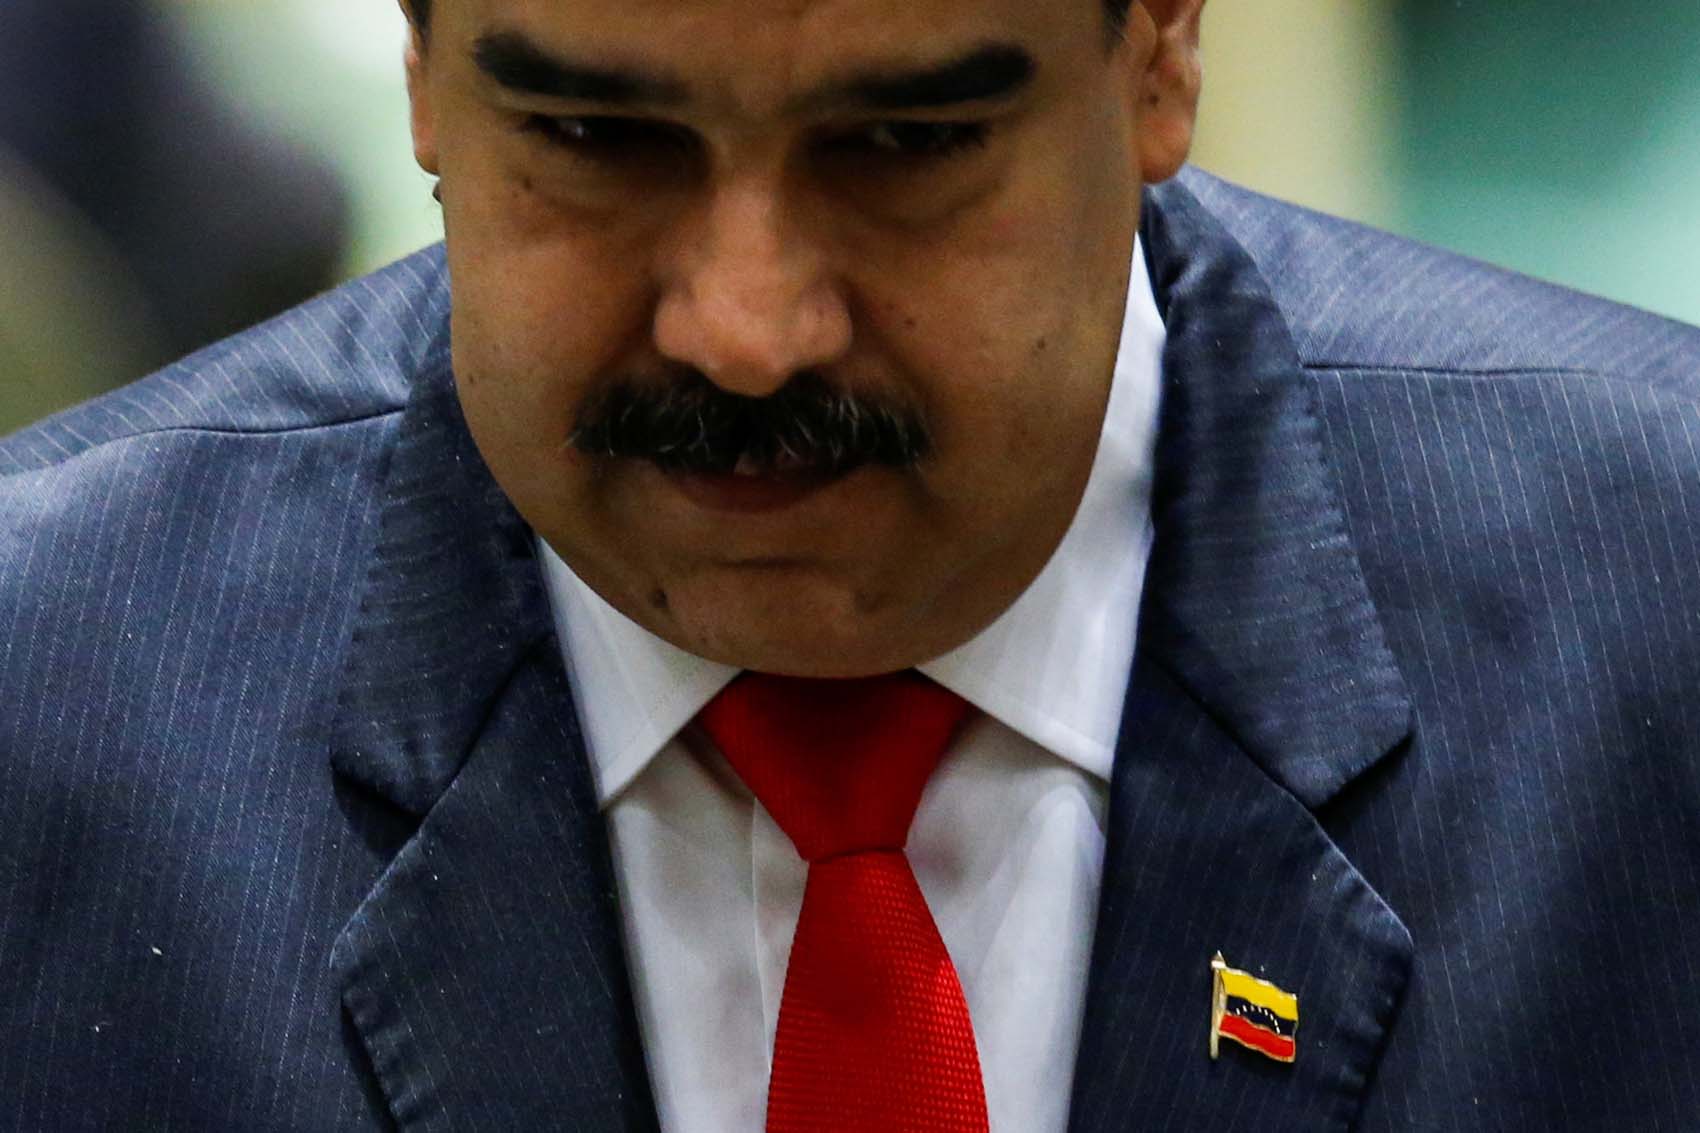 The Washington Post: EEUU observa desde el margen cómo el régimen de Venezuela desestabiliza la región